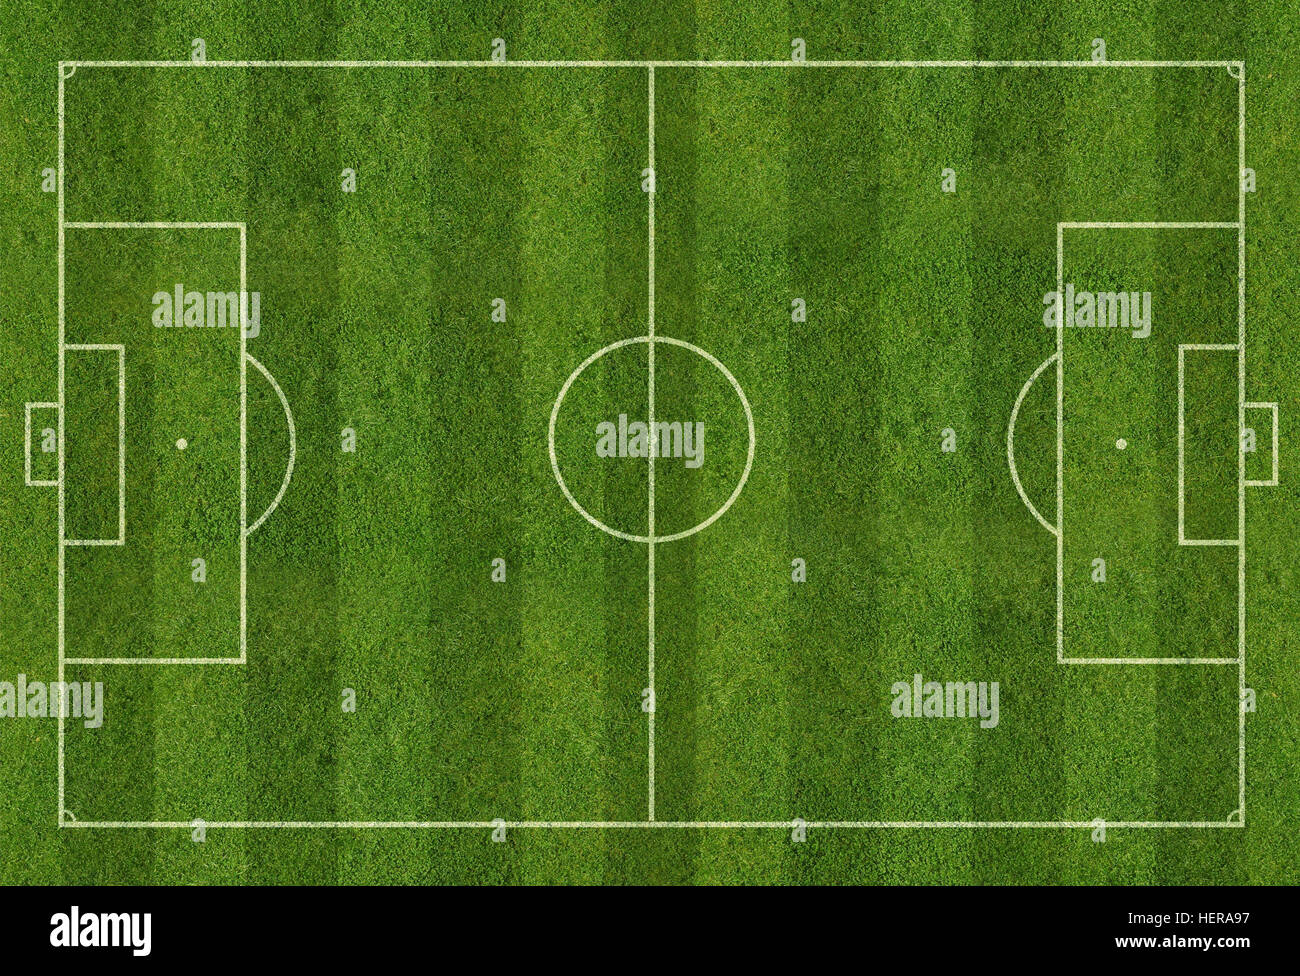 Internationales Fussballfeld mit Rasen und Linien, Plan von oben Banque D'Images